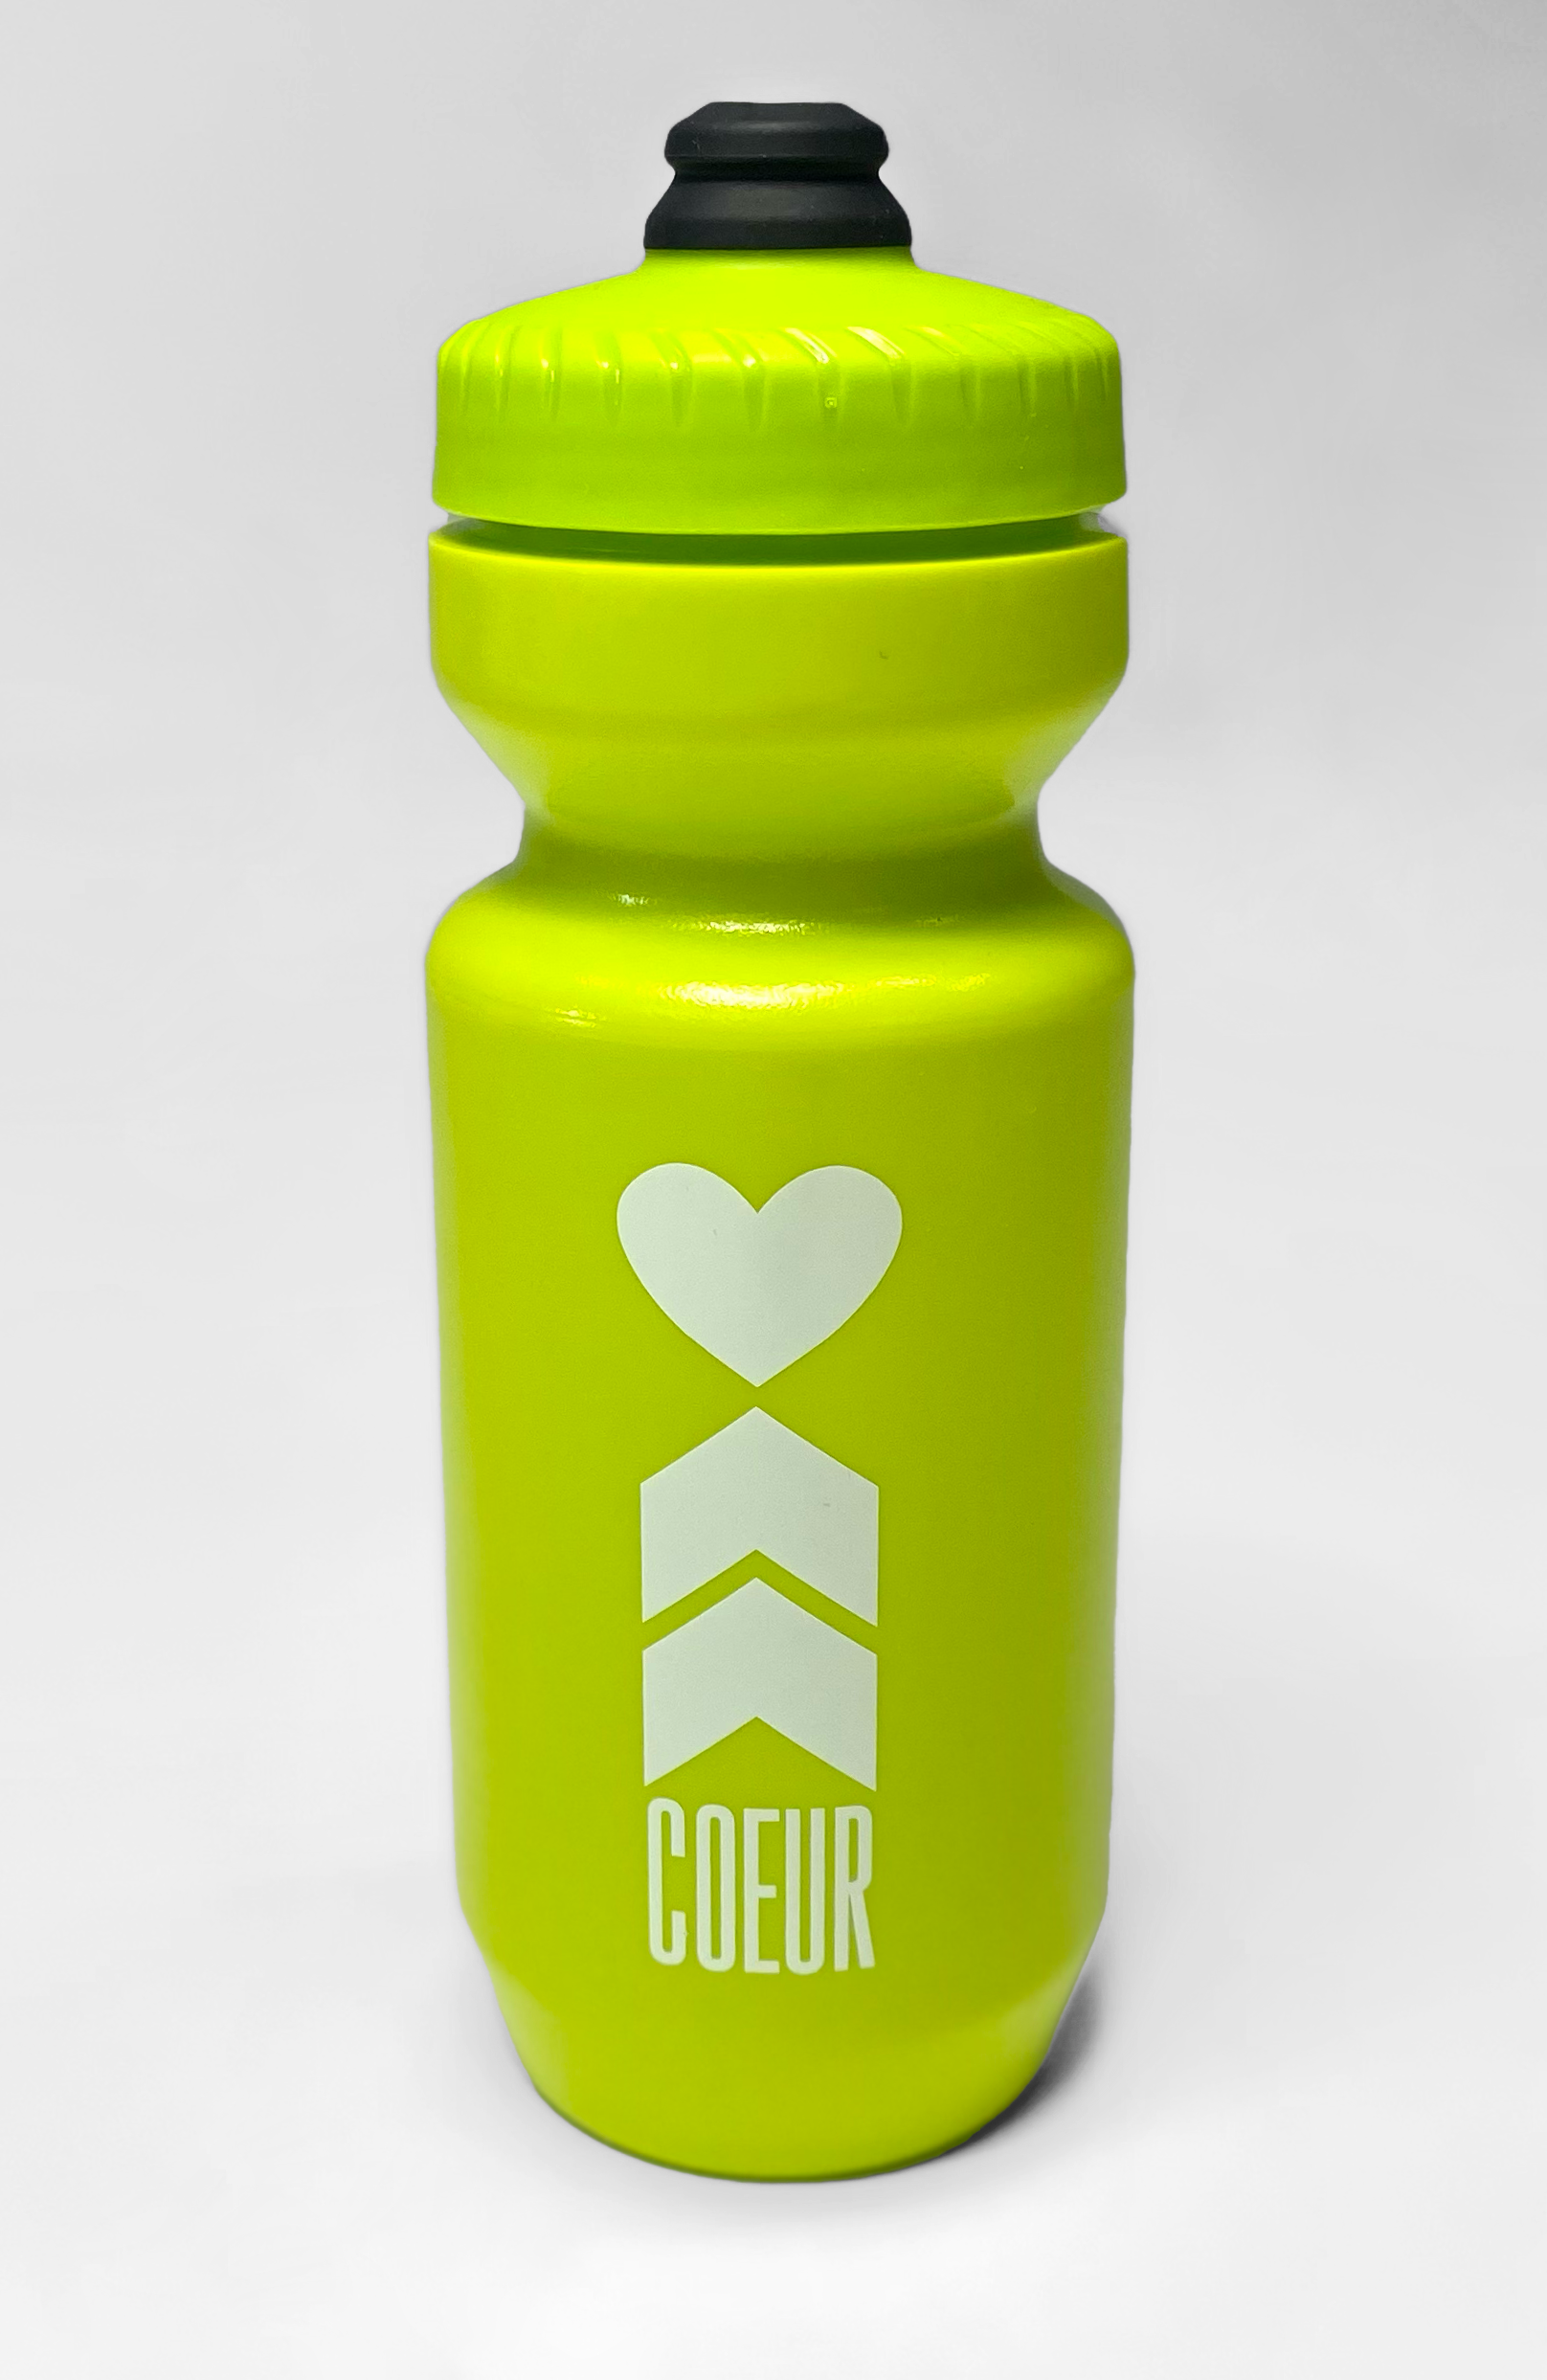 https://www.coeursports.com/cdn/shop/files/coeur-sports-water-bottle-one-size-green-lime-green-coeur-logo-water-bottle-29169548460090.png?v=1694137183&width=1616